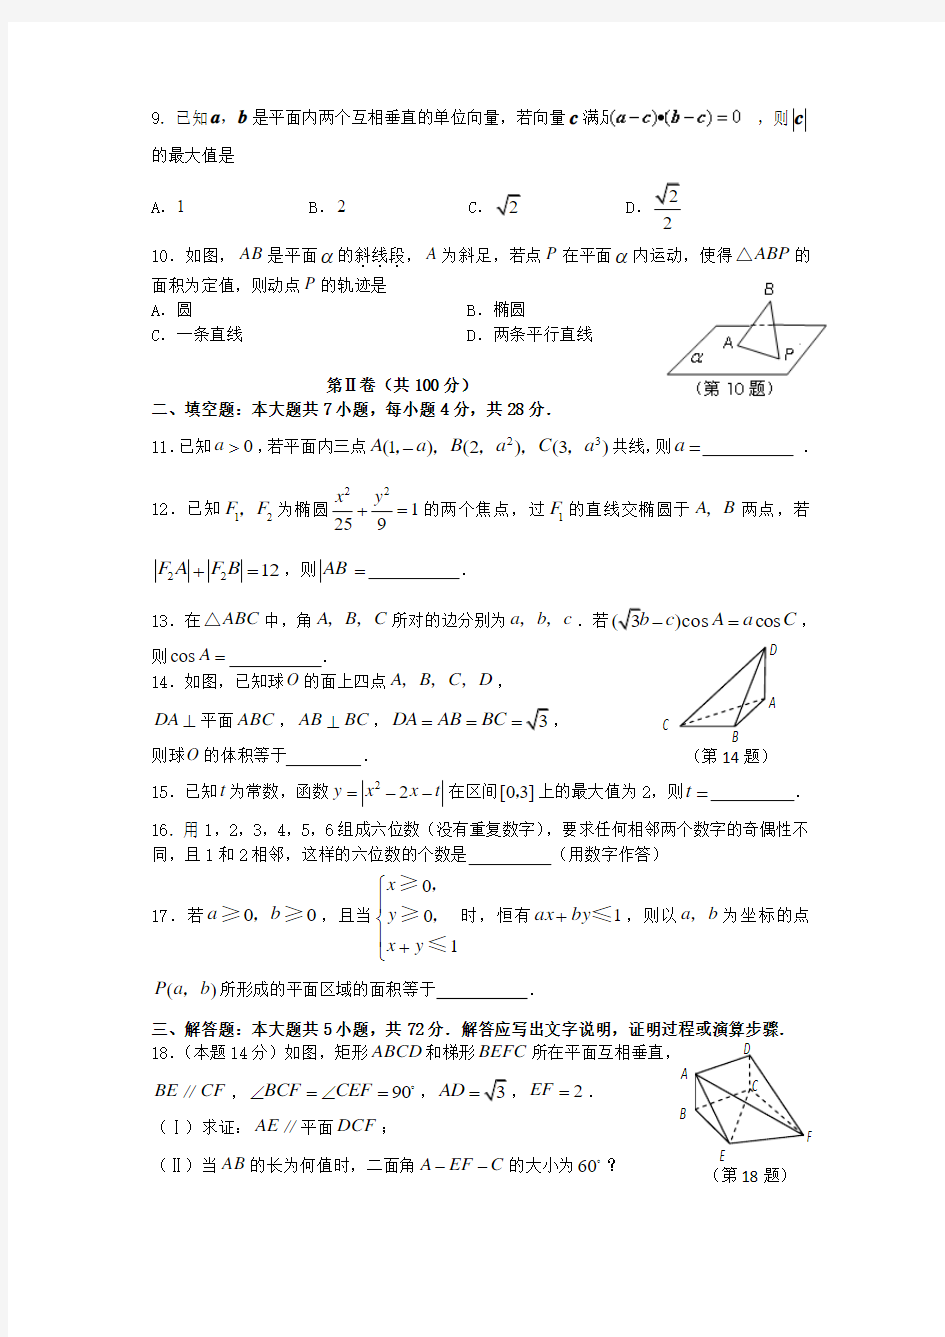 2008年高考理科数学(浙江)卷